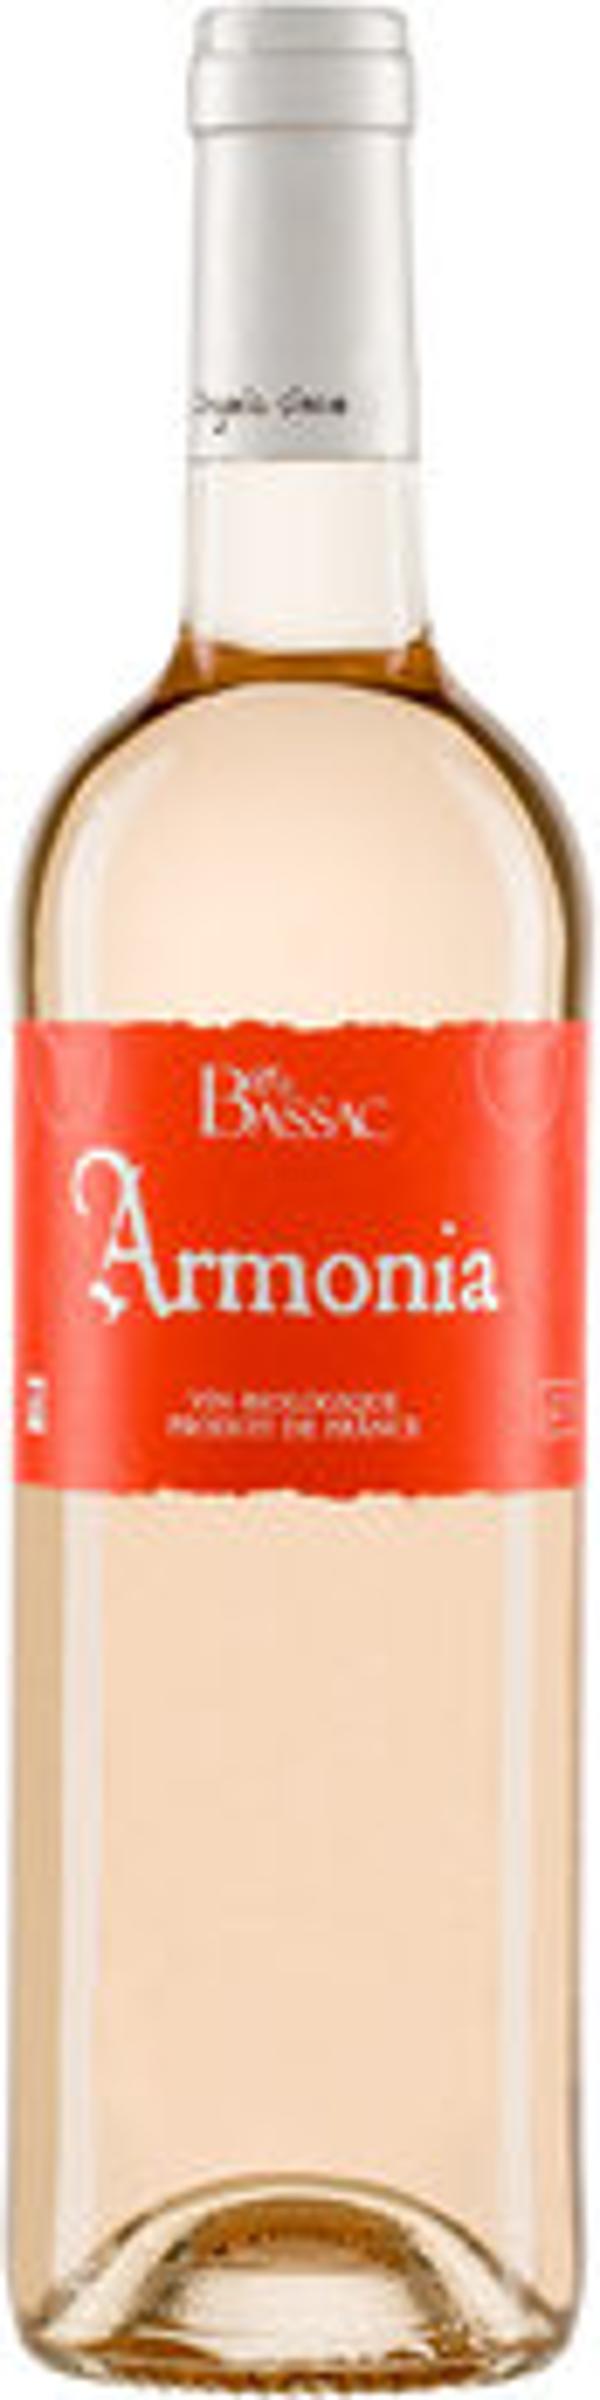 Produktfoto zu Armonia Rosé, 0,75 L